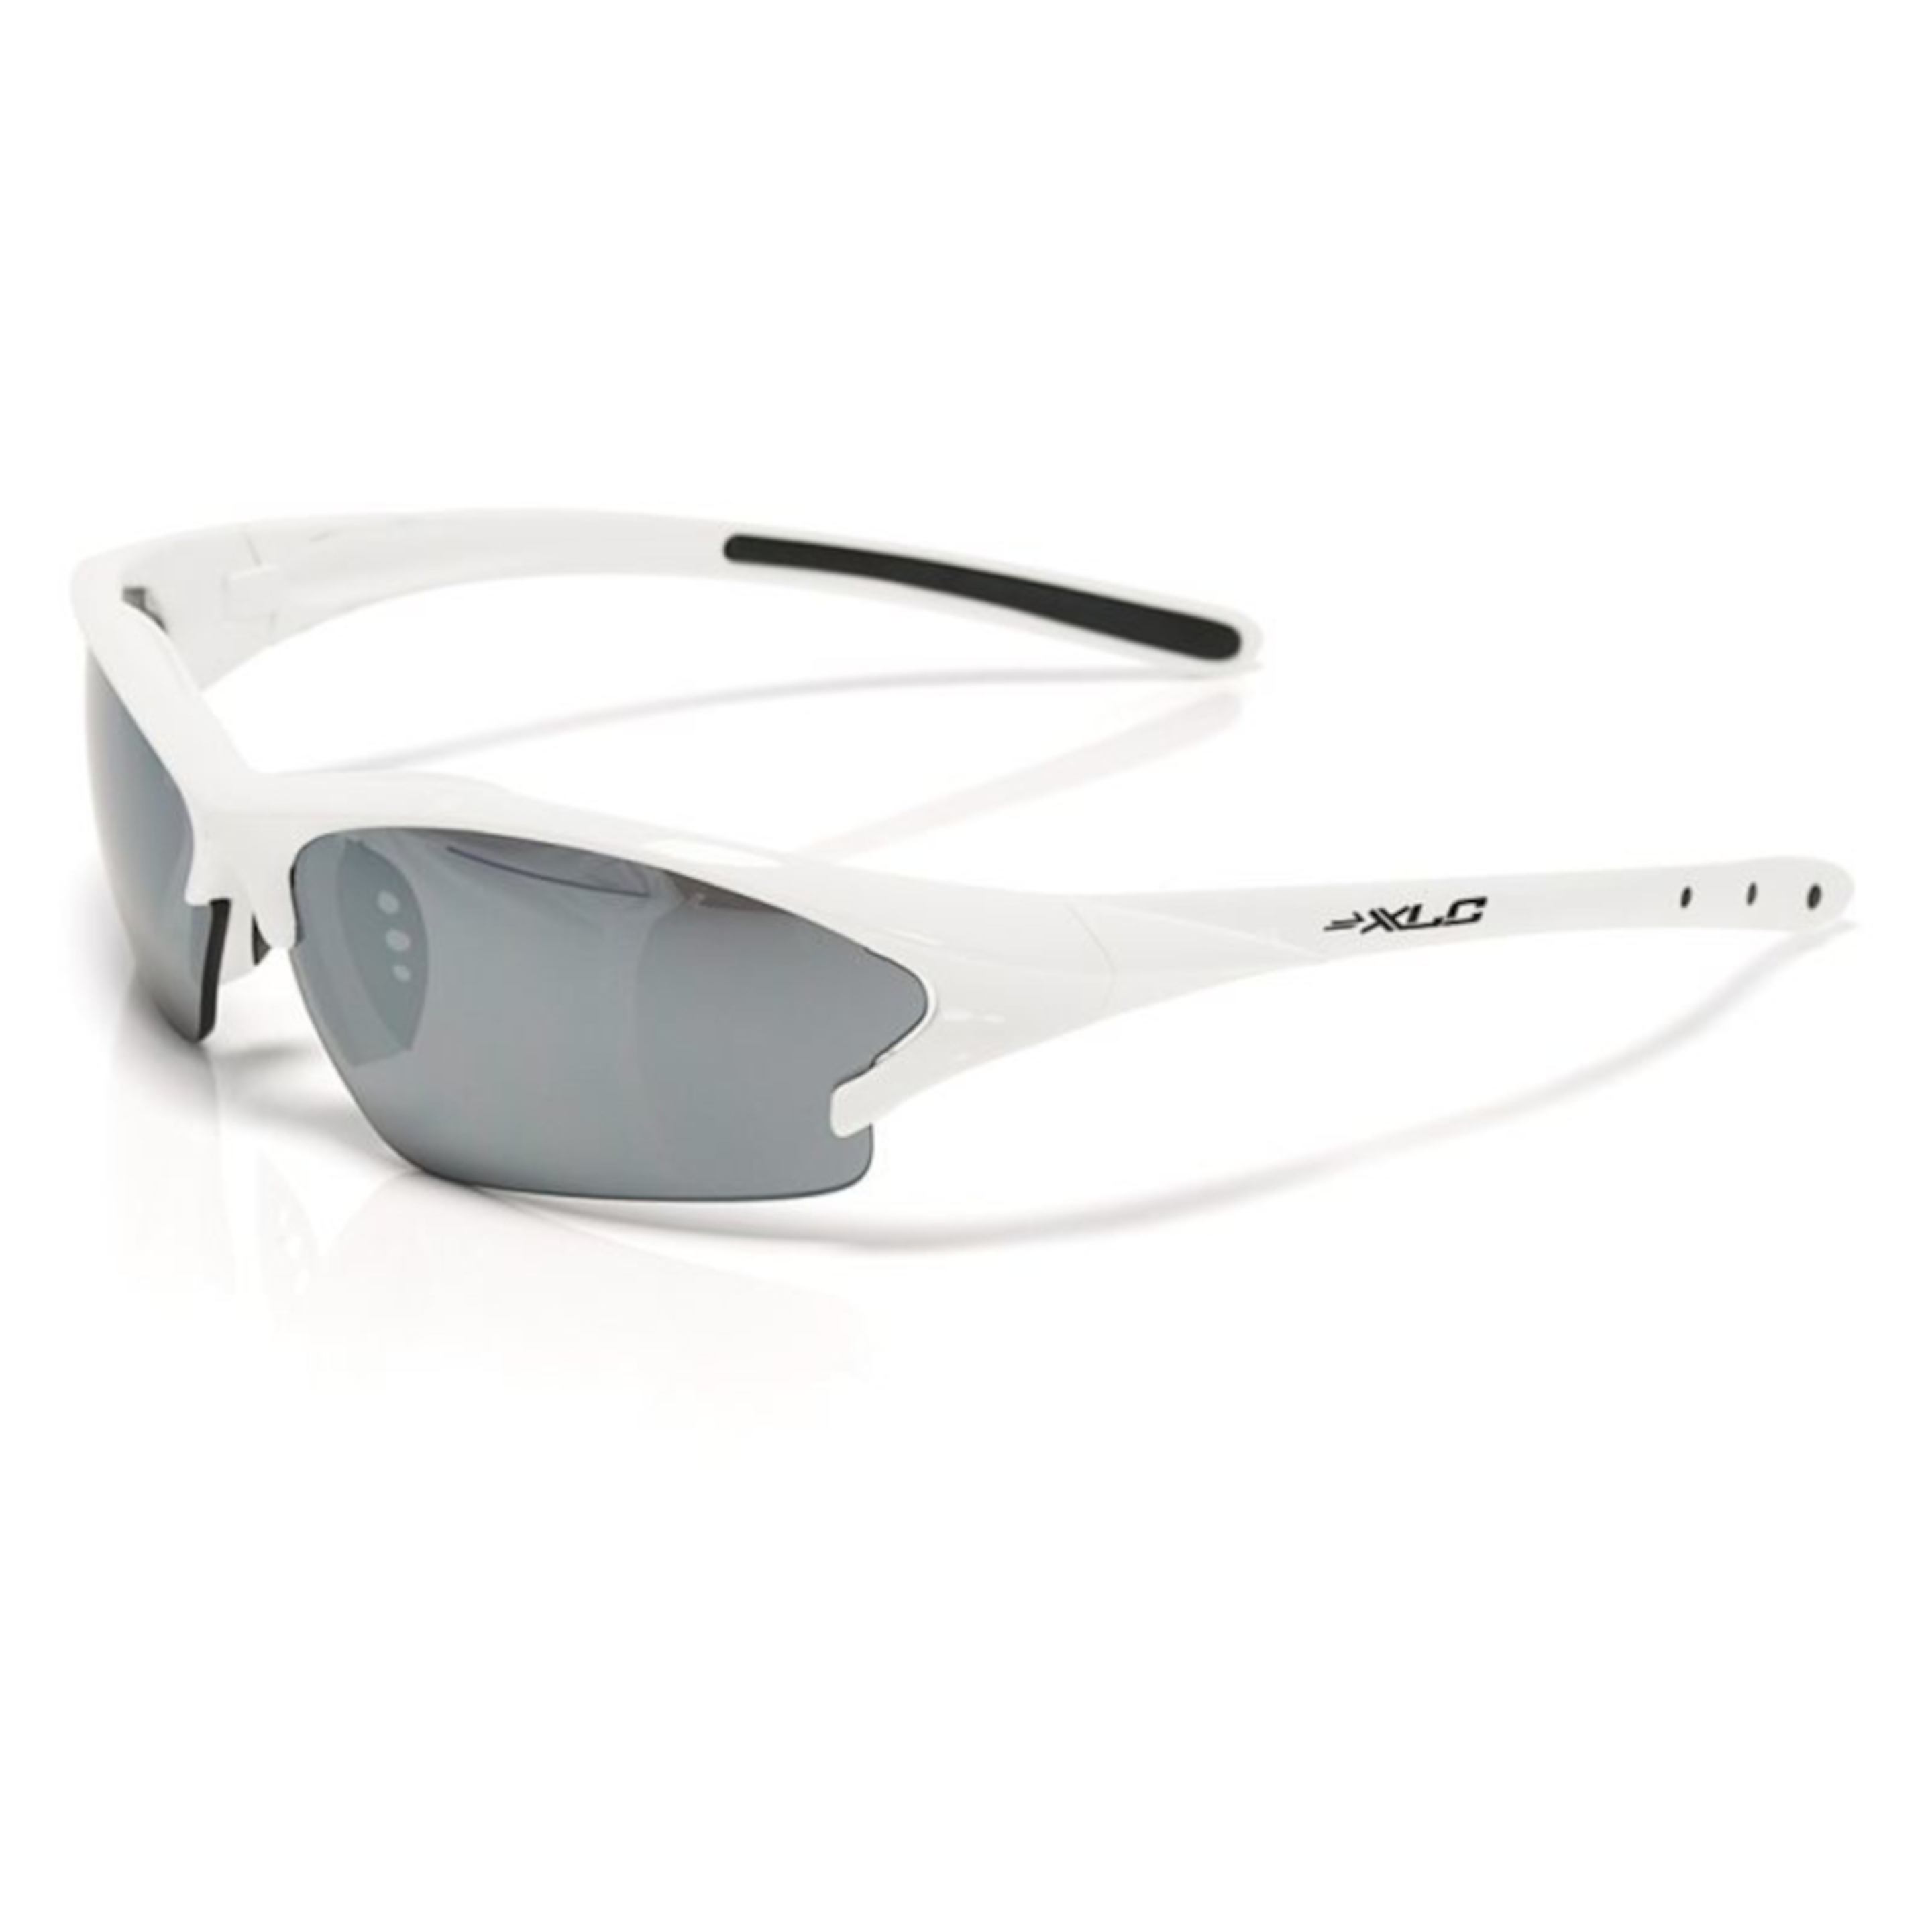 Óculos De Ciclismo Sg-c07 Jamaica Xlc - Branco - Sg-c07 ciclismo óculos de sol Jamaica XIc Branco e Crystal prata moldura de espelho | Sport Zone MKP